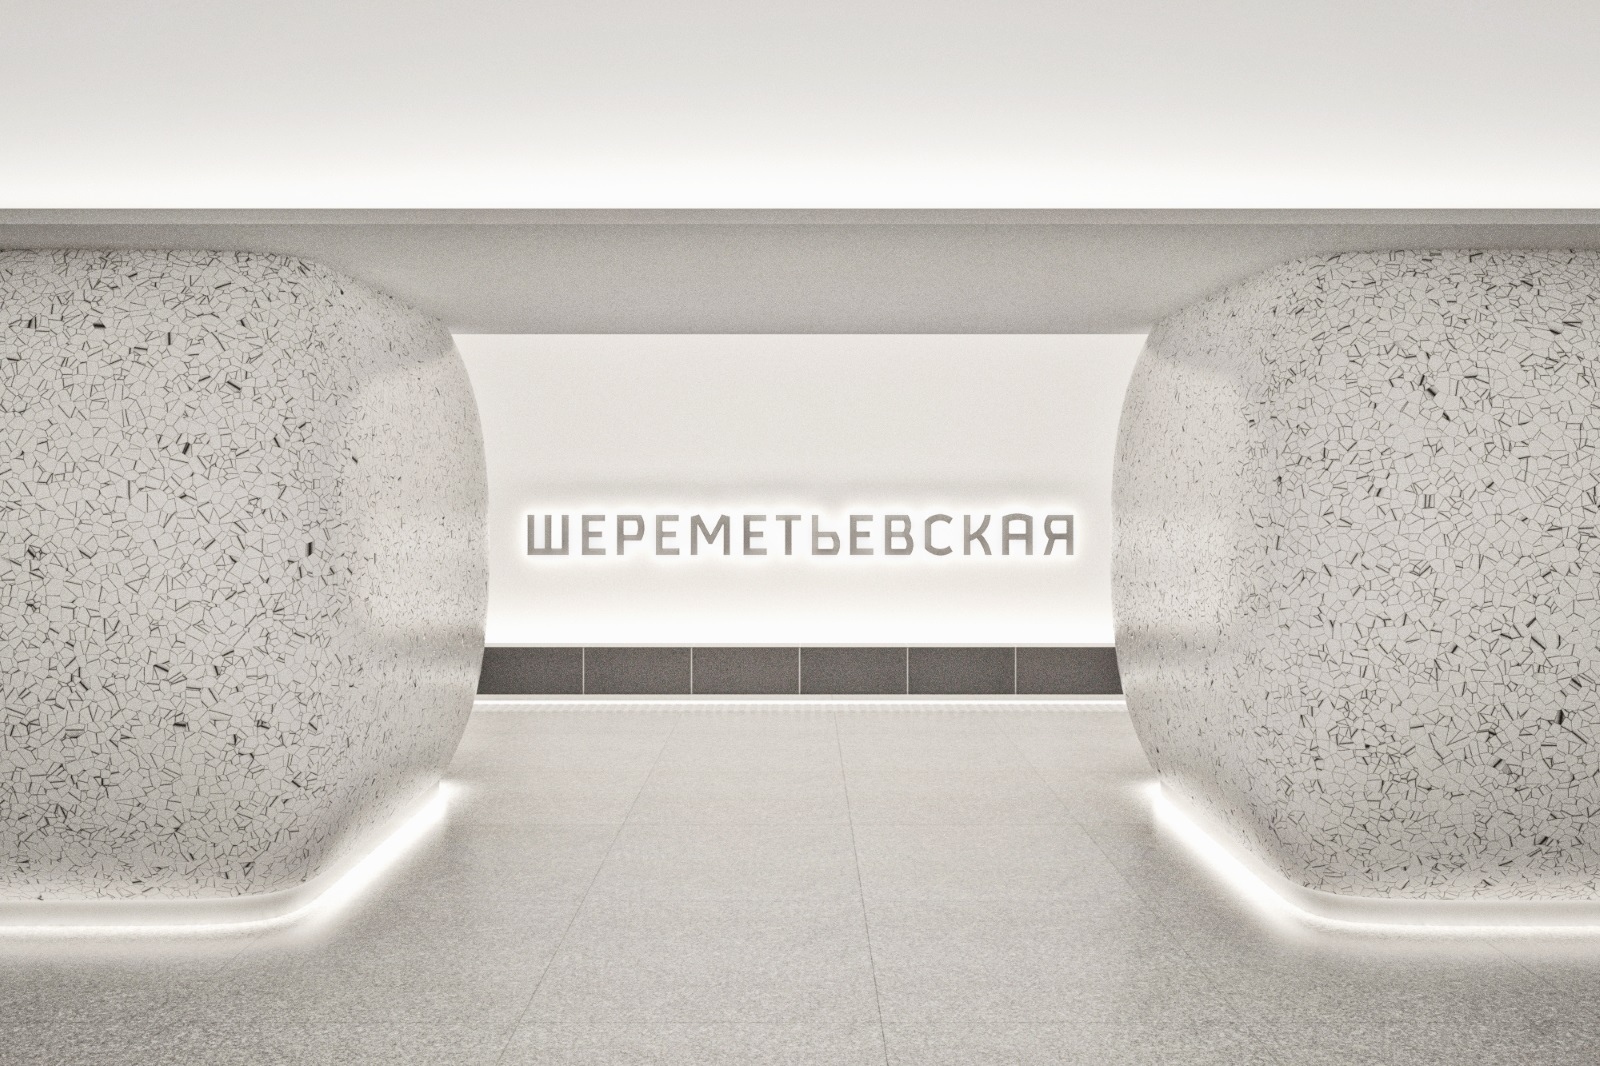 станция метро шереметьевская конструкции чзмк